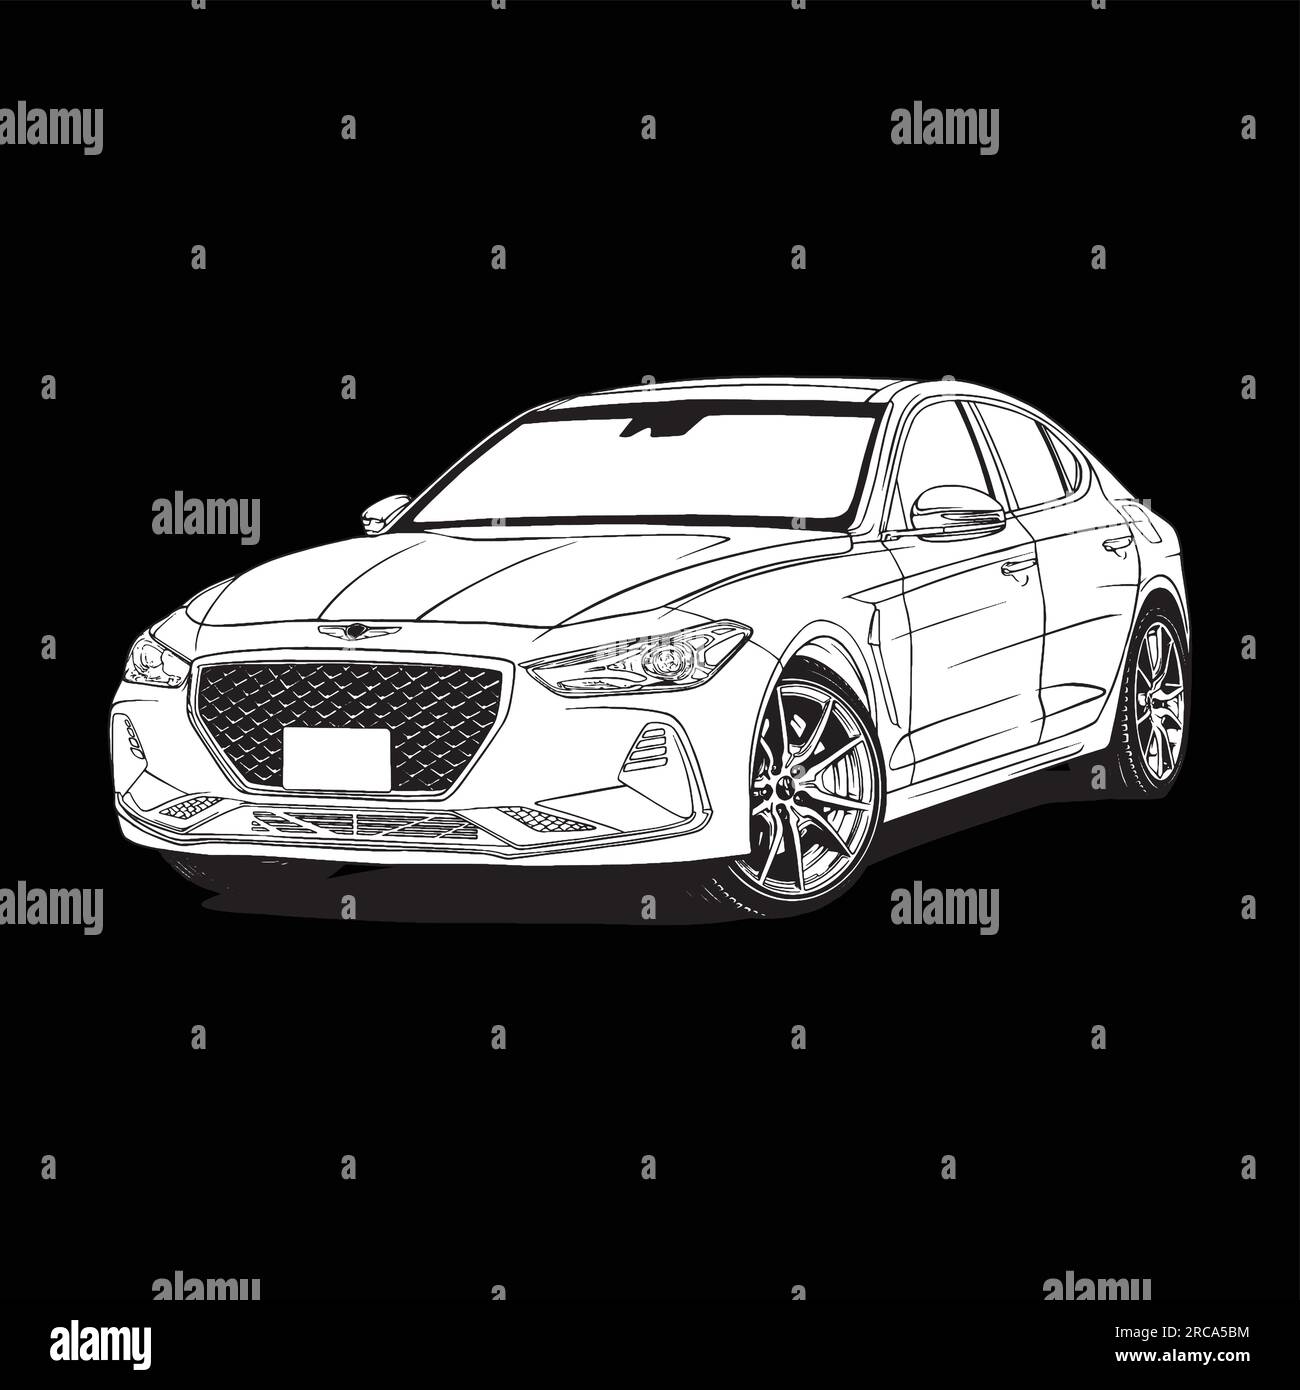 Dessin vectoriel d'illustration de voiture de berline de sport coréenne Illustration de Vecteur